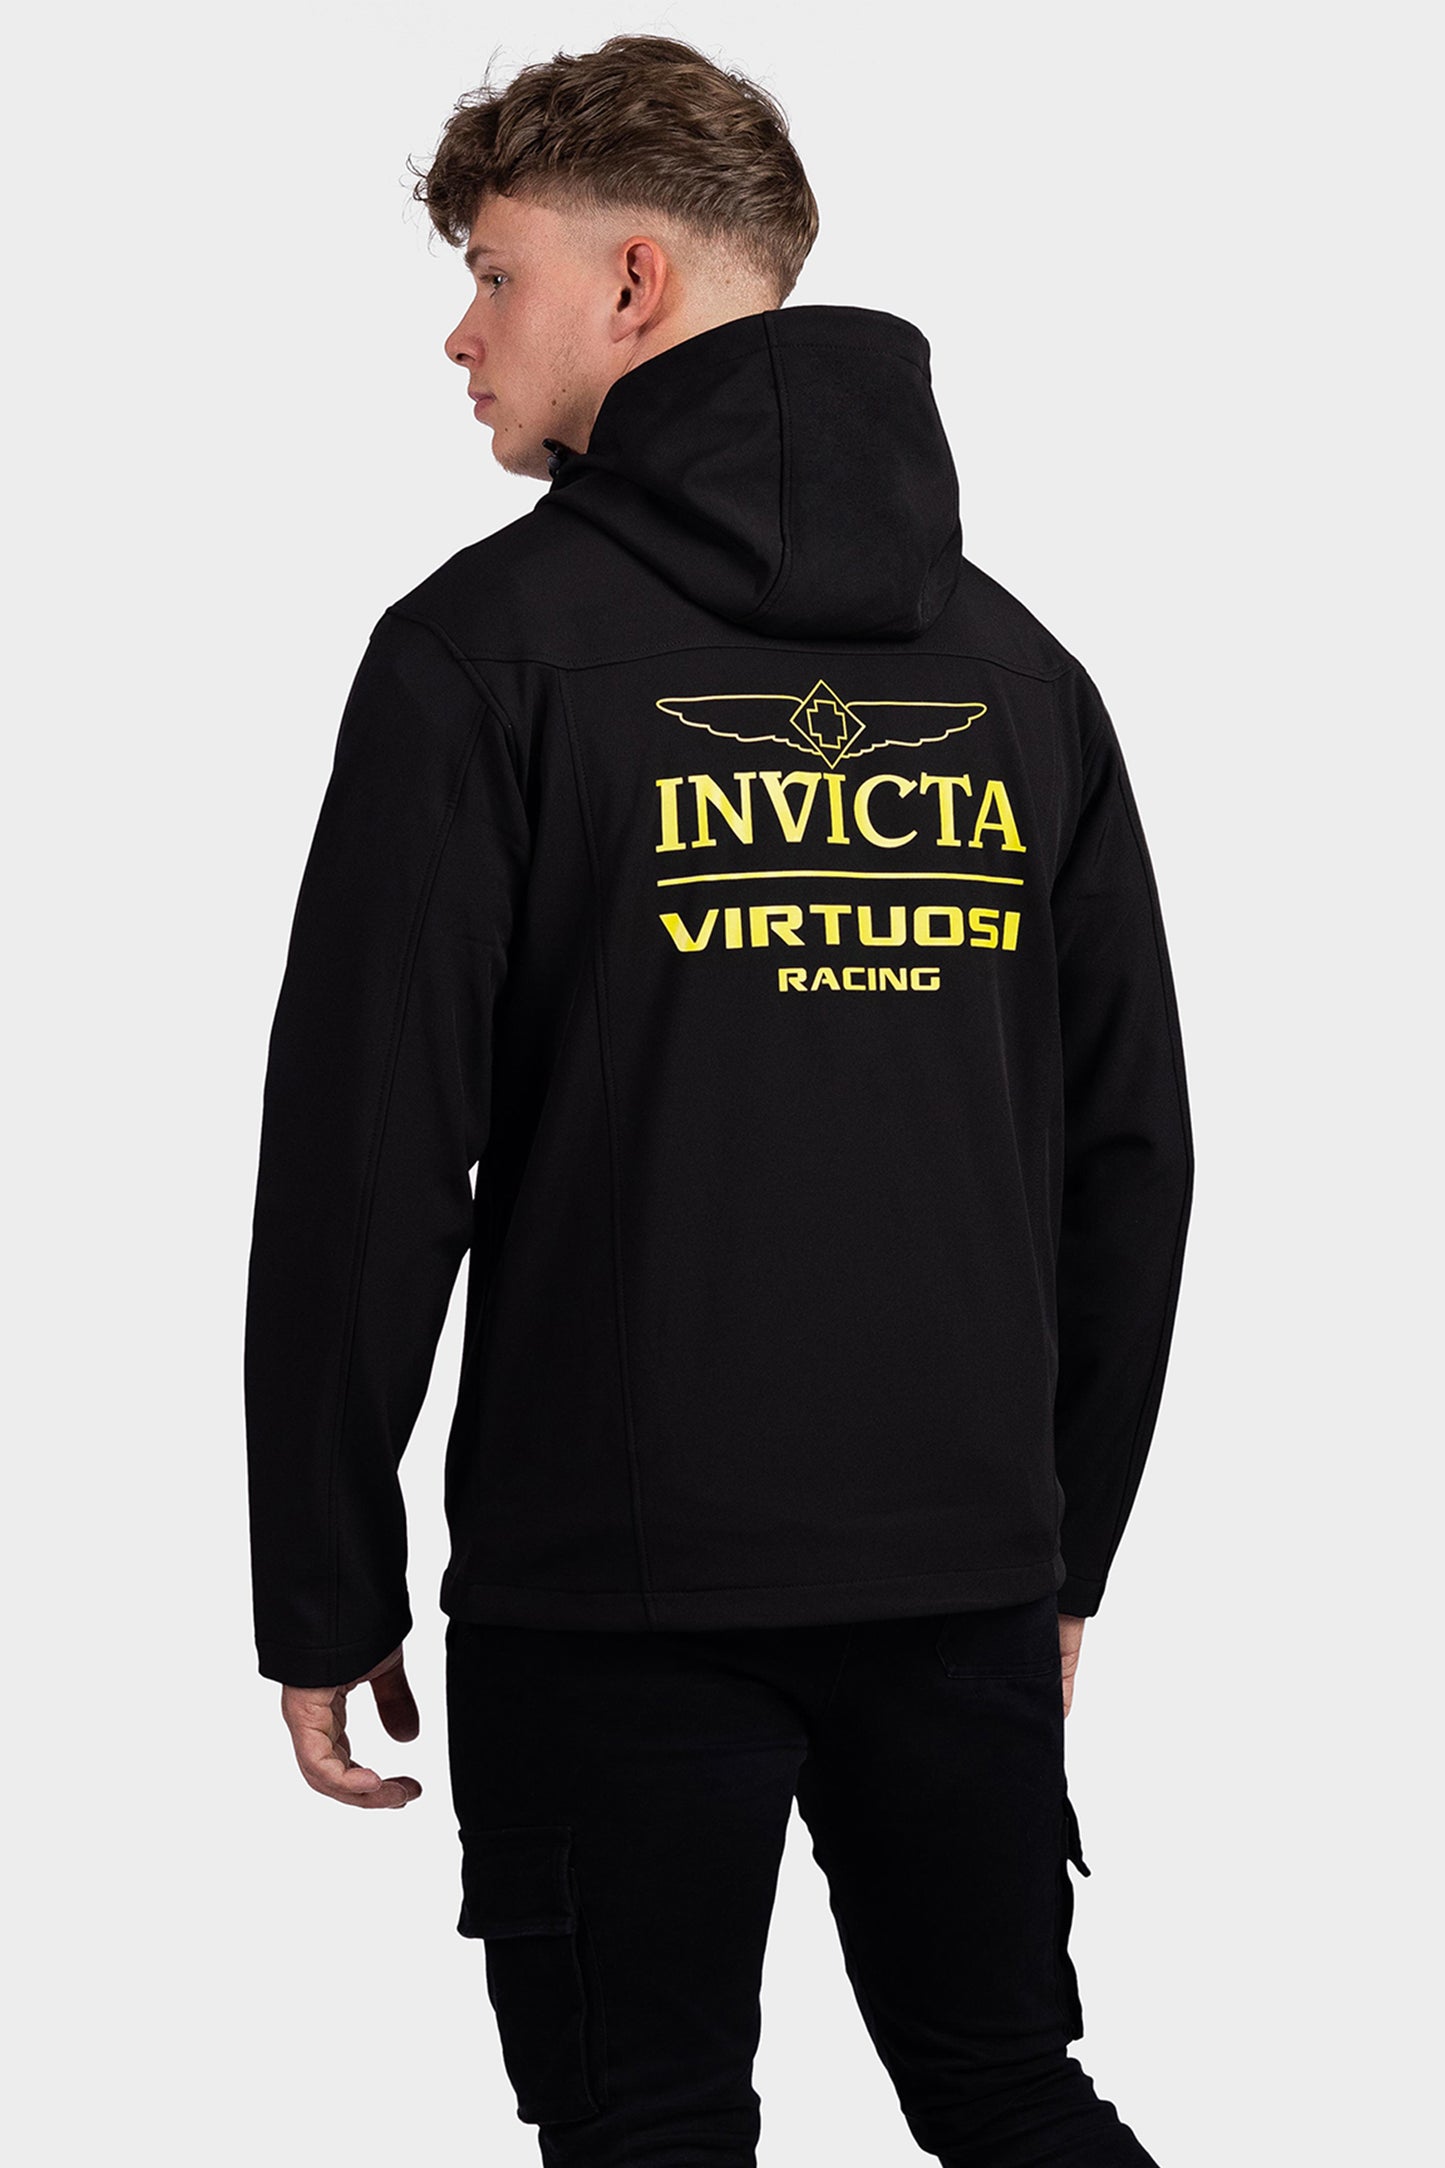 Invicta Virtuosi Team Jacket